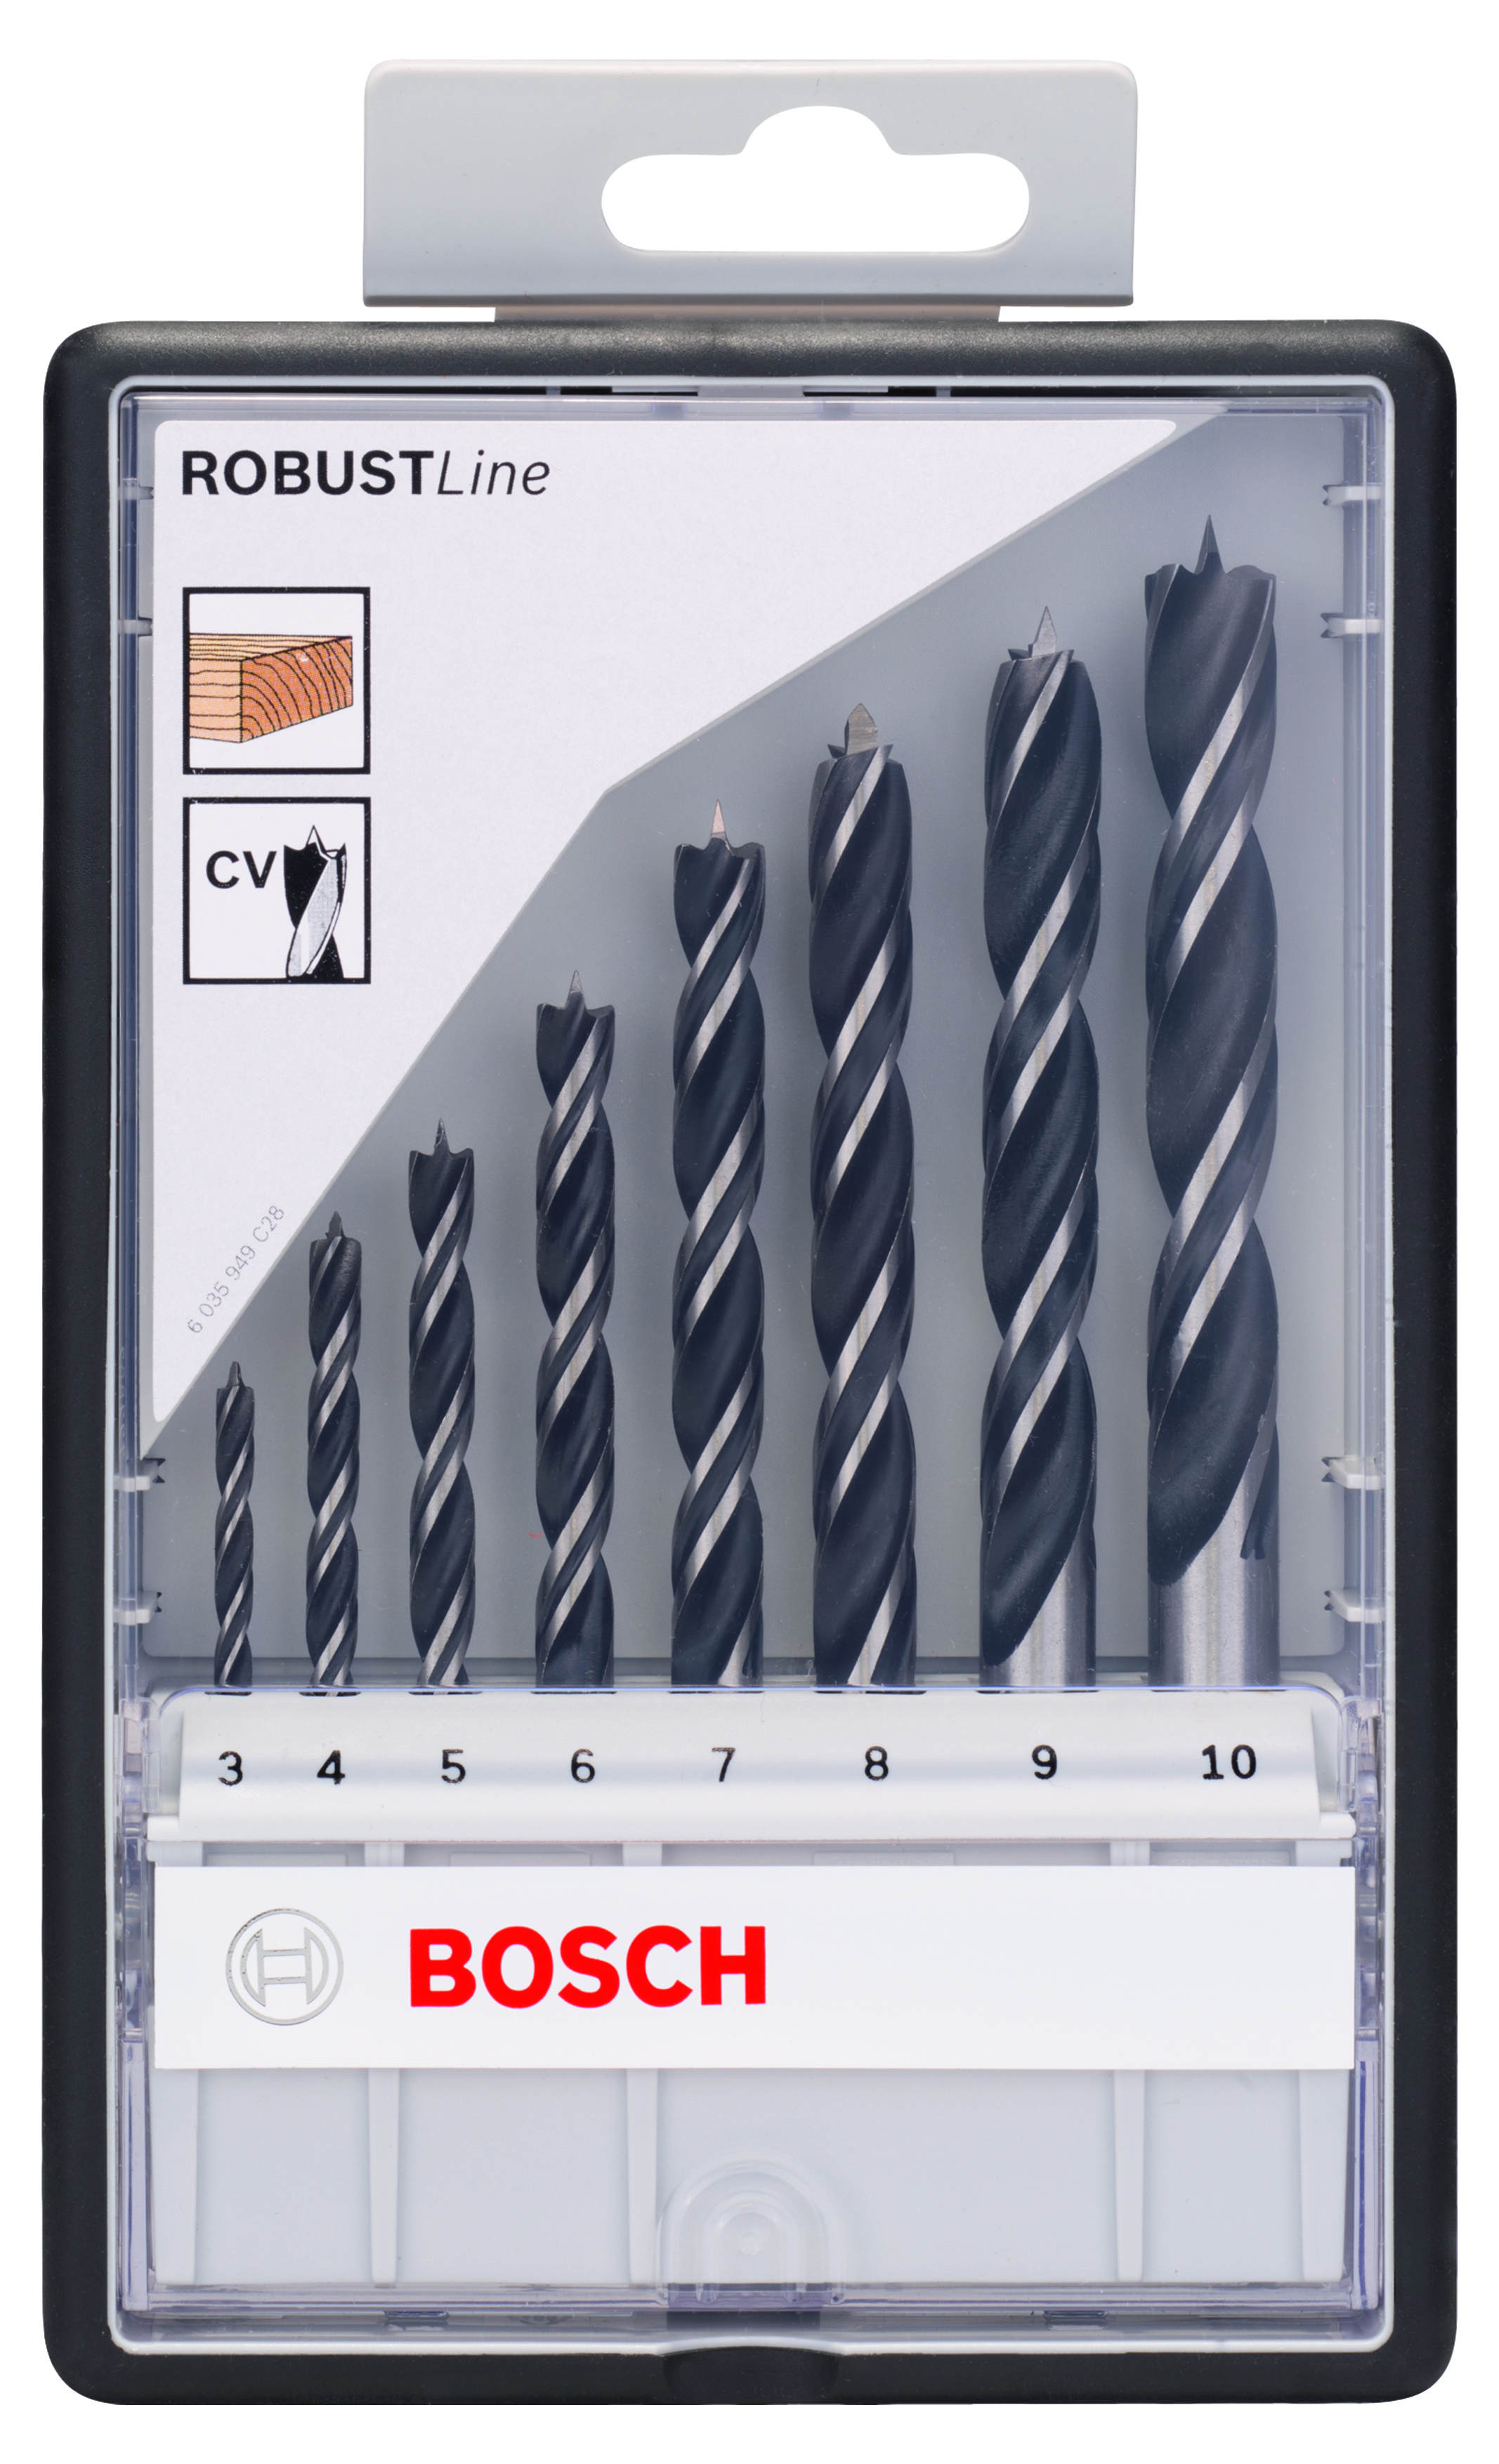 Bosch 8-piece Robust Line Brad Point Drill Bit Set